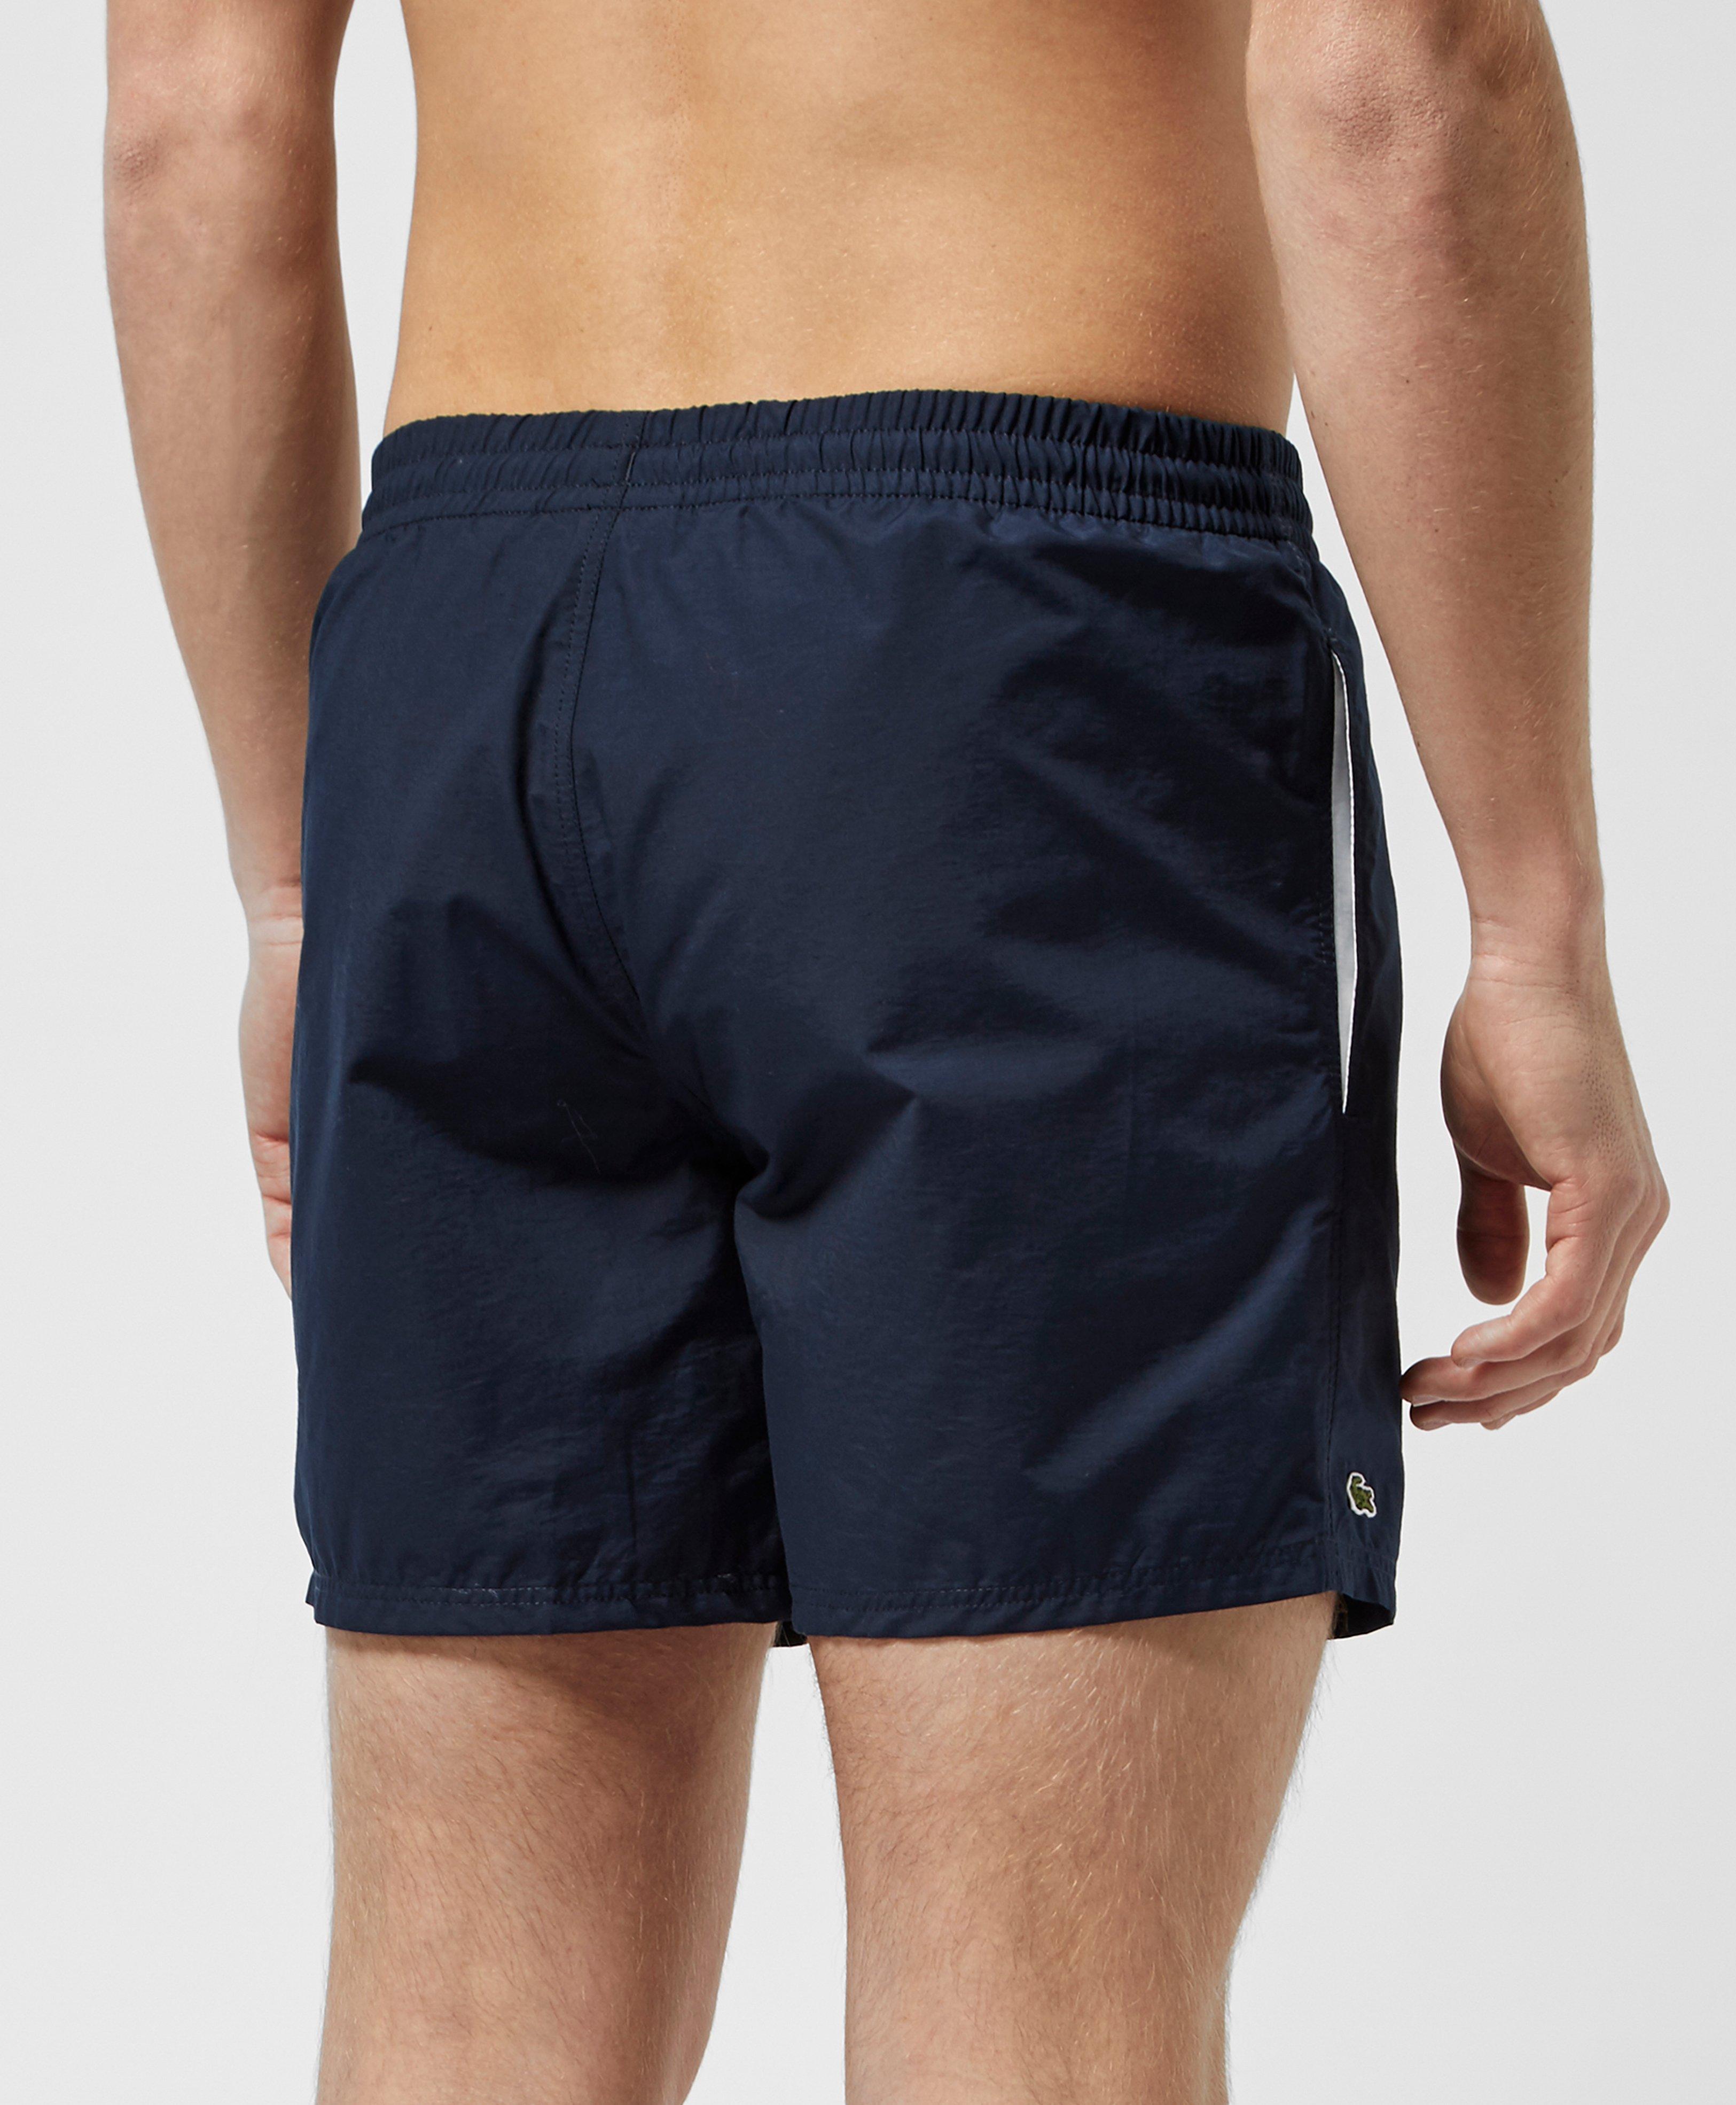 Lyst - Lacoste Swim Shorts in Blue for Men